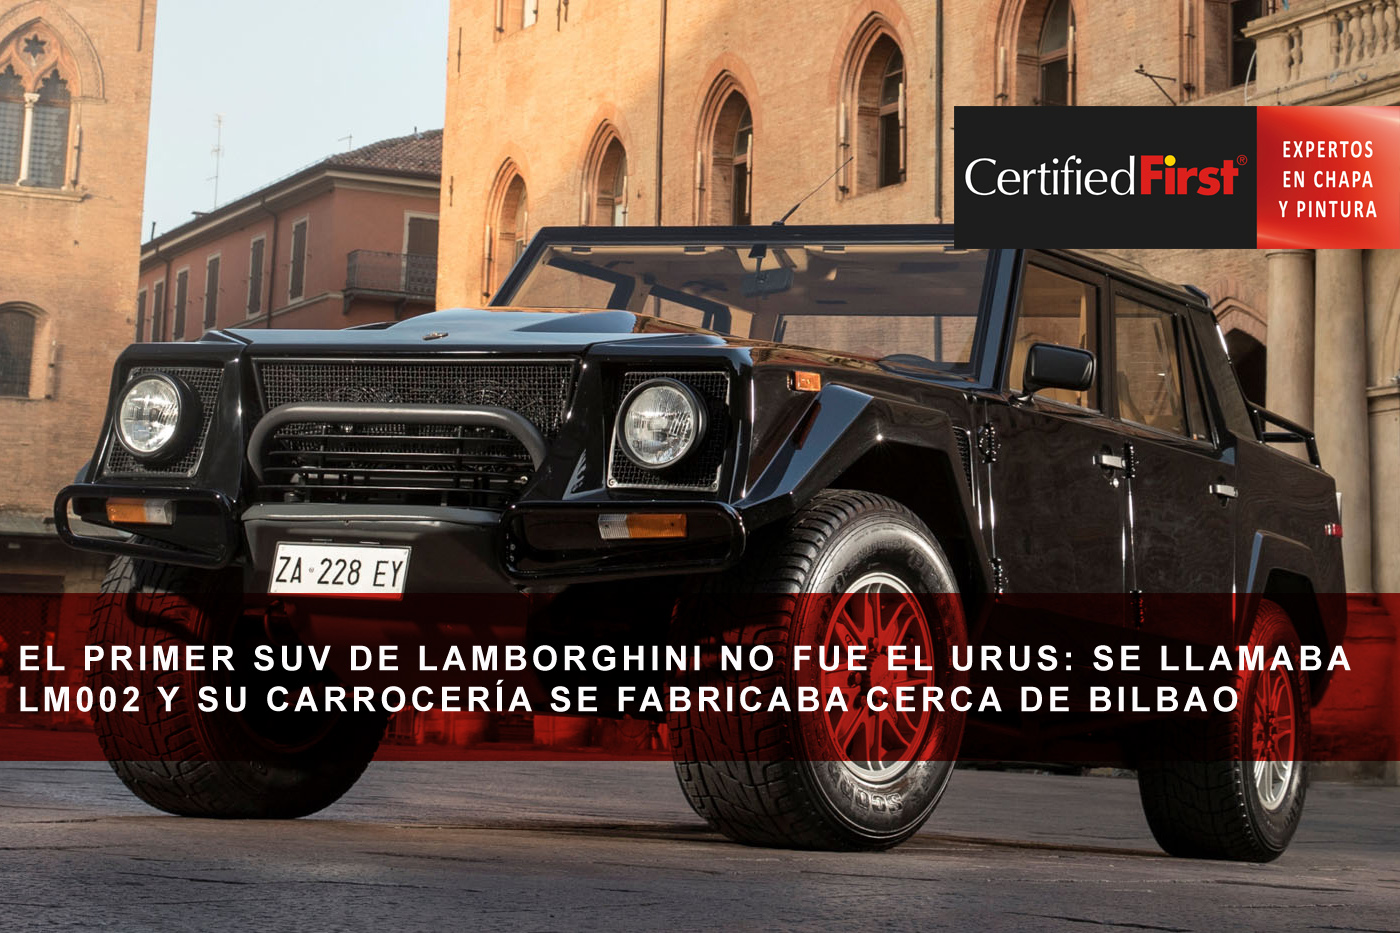 El primer SUV de Lamborghini no fue el Urus: se llamaba LM002 y su carrocería se fabricaba cerca de Bilbao